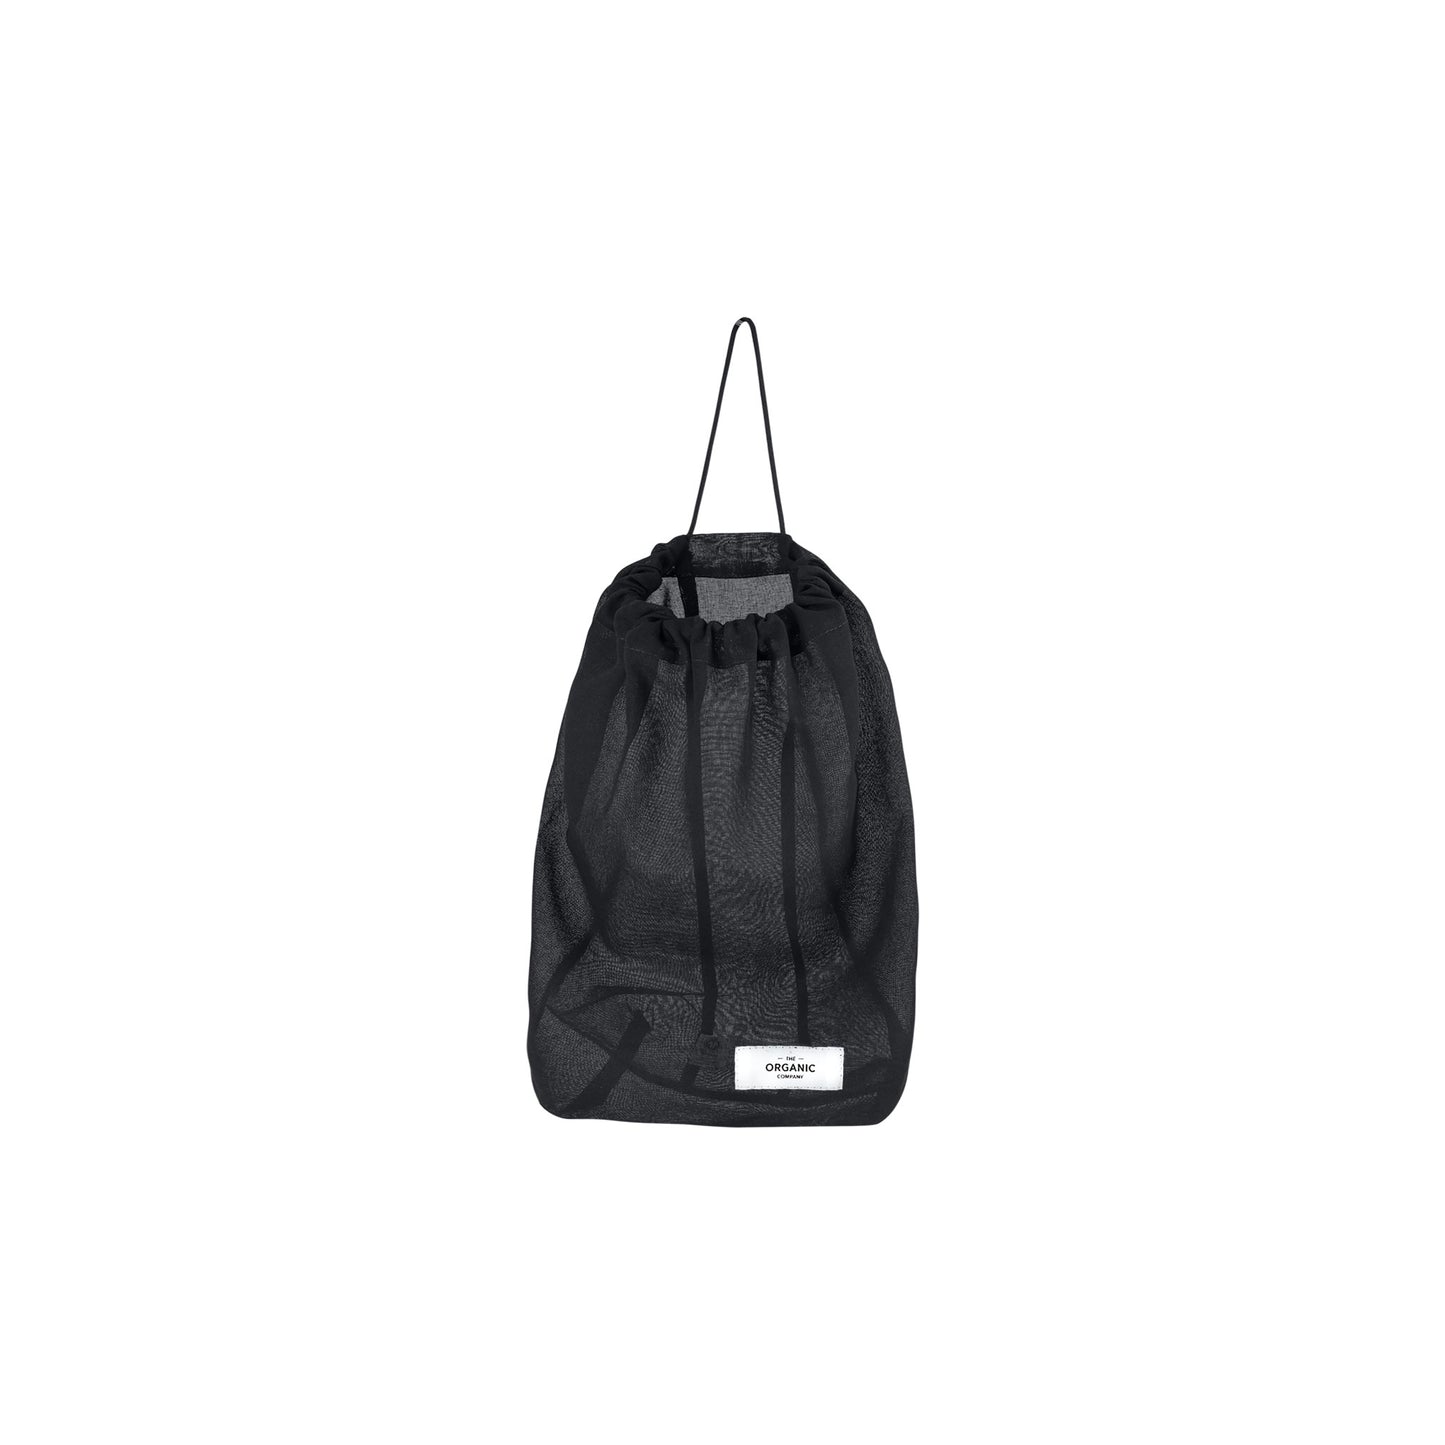 All Purpose Bag Medium - Black